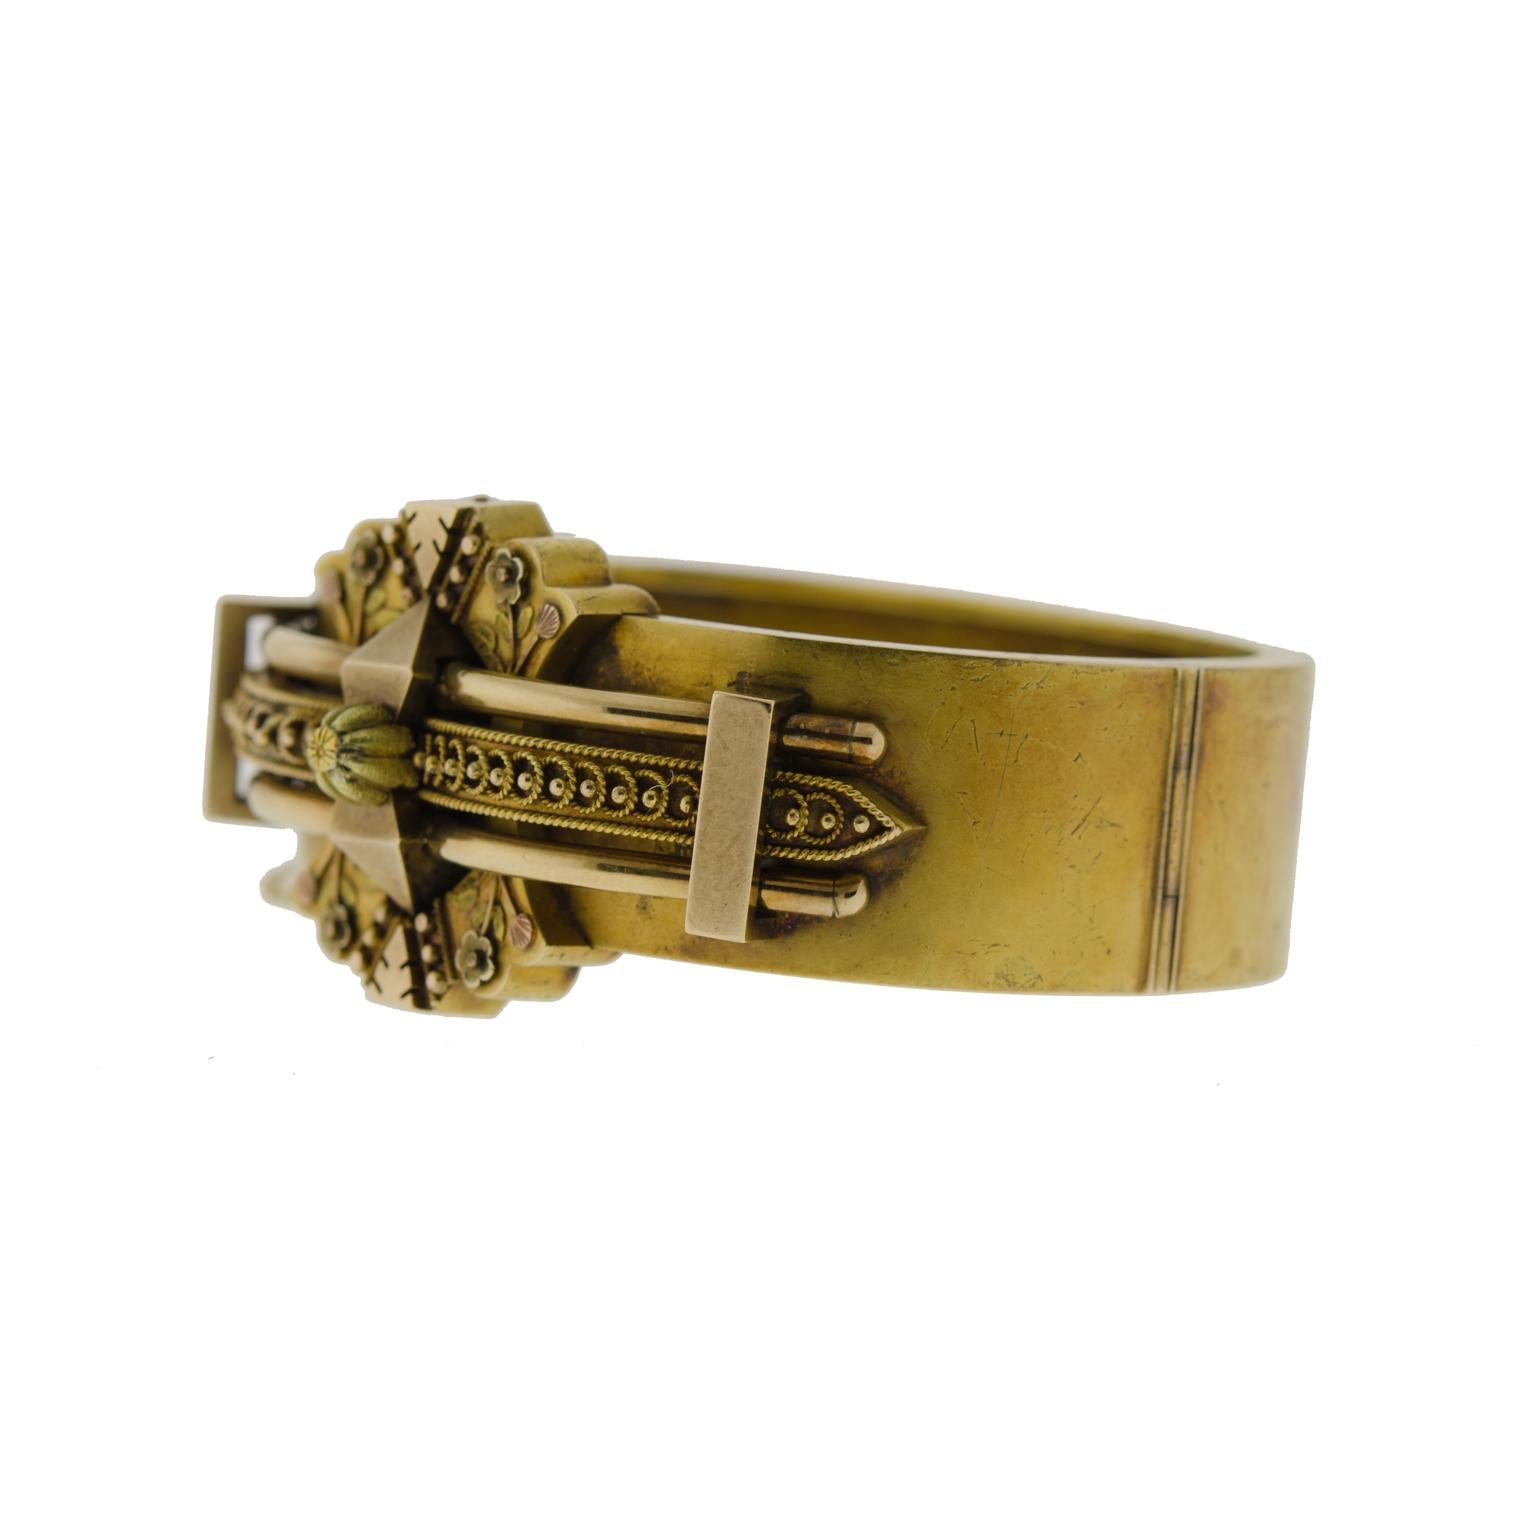 Dieser auffällige, mehrdimensionale viktorianische Armreif mit Scharnier stammt aus dem späten neunzehnten Jahrhundert. Handgefertigt aus 14-karätigem Gelbgold und mit einem klassischen etruskischen Design verziert. Der obere Teil des Armbands ist